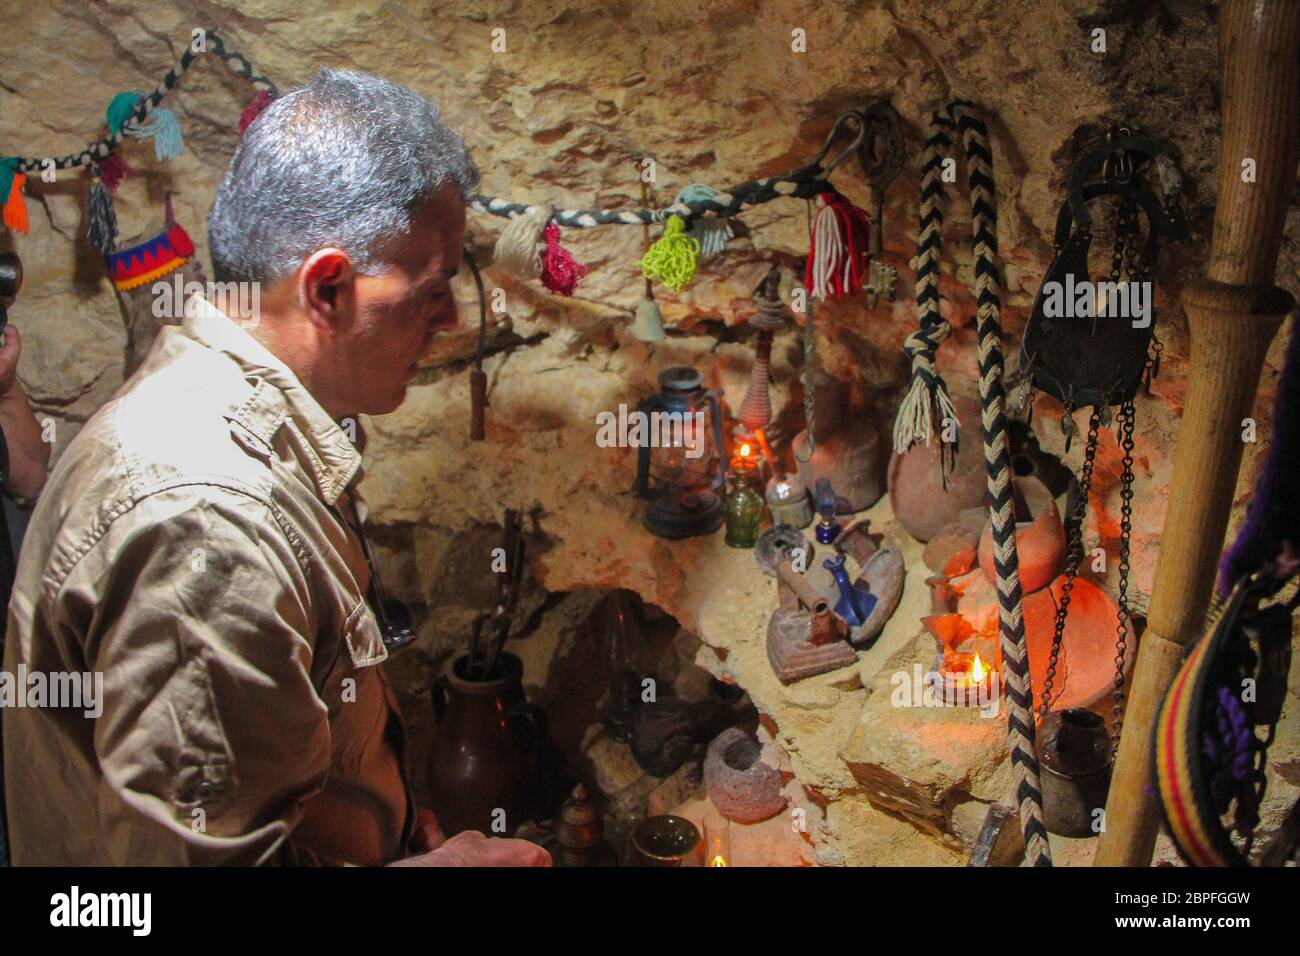 18.Mai 2020: Bilder aus der Stadt Akrabat im Gouvernement Idlib in Nordsyrien zeigen, wie ein syrischer Mann eine Höhle, die er als Zufluchtsort für sich und seine Familie gegraben hat, in ein Meisterwerk verwandelt, nachdem die Militäraktion beendet war und die Höhle zu einem Ort wurde, an dem sich Lagerkinder versammeln Zu wissen, wie die Menschen in der Vergangenheit gelebt haben. (Bild: © Moawia Atrash/ZUMA Wire) Stockfoto